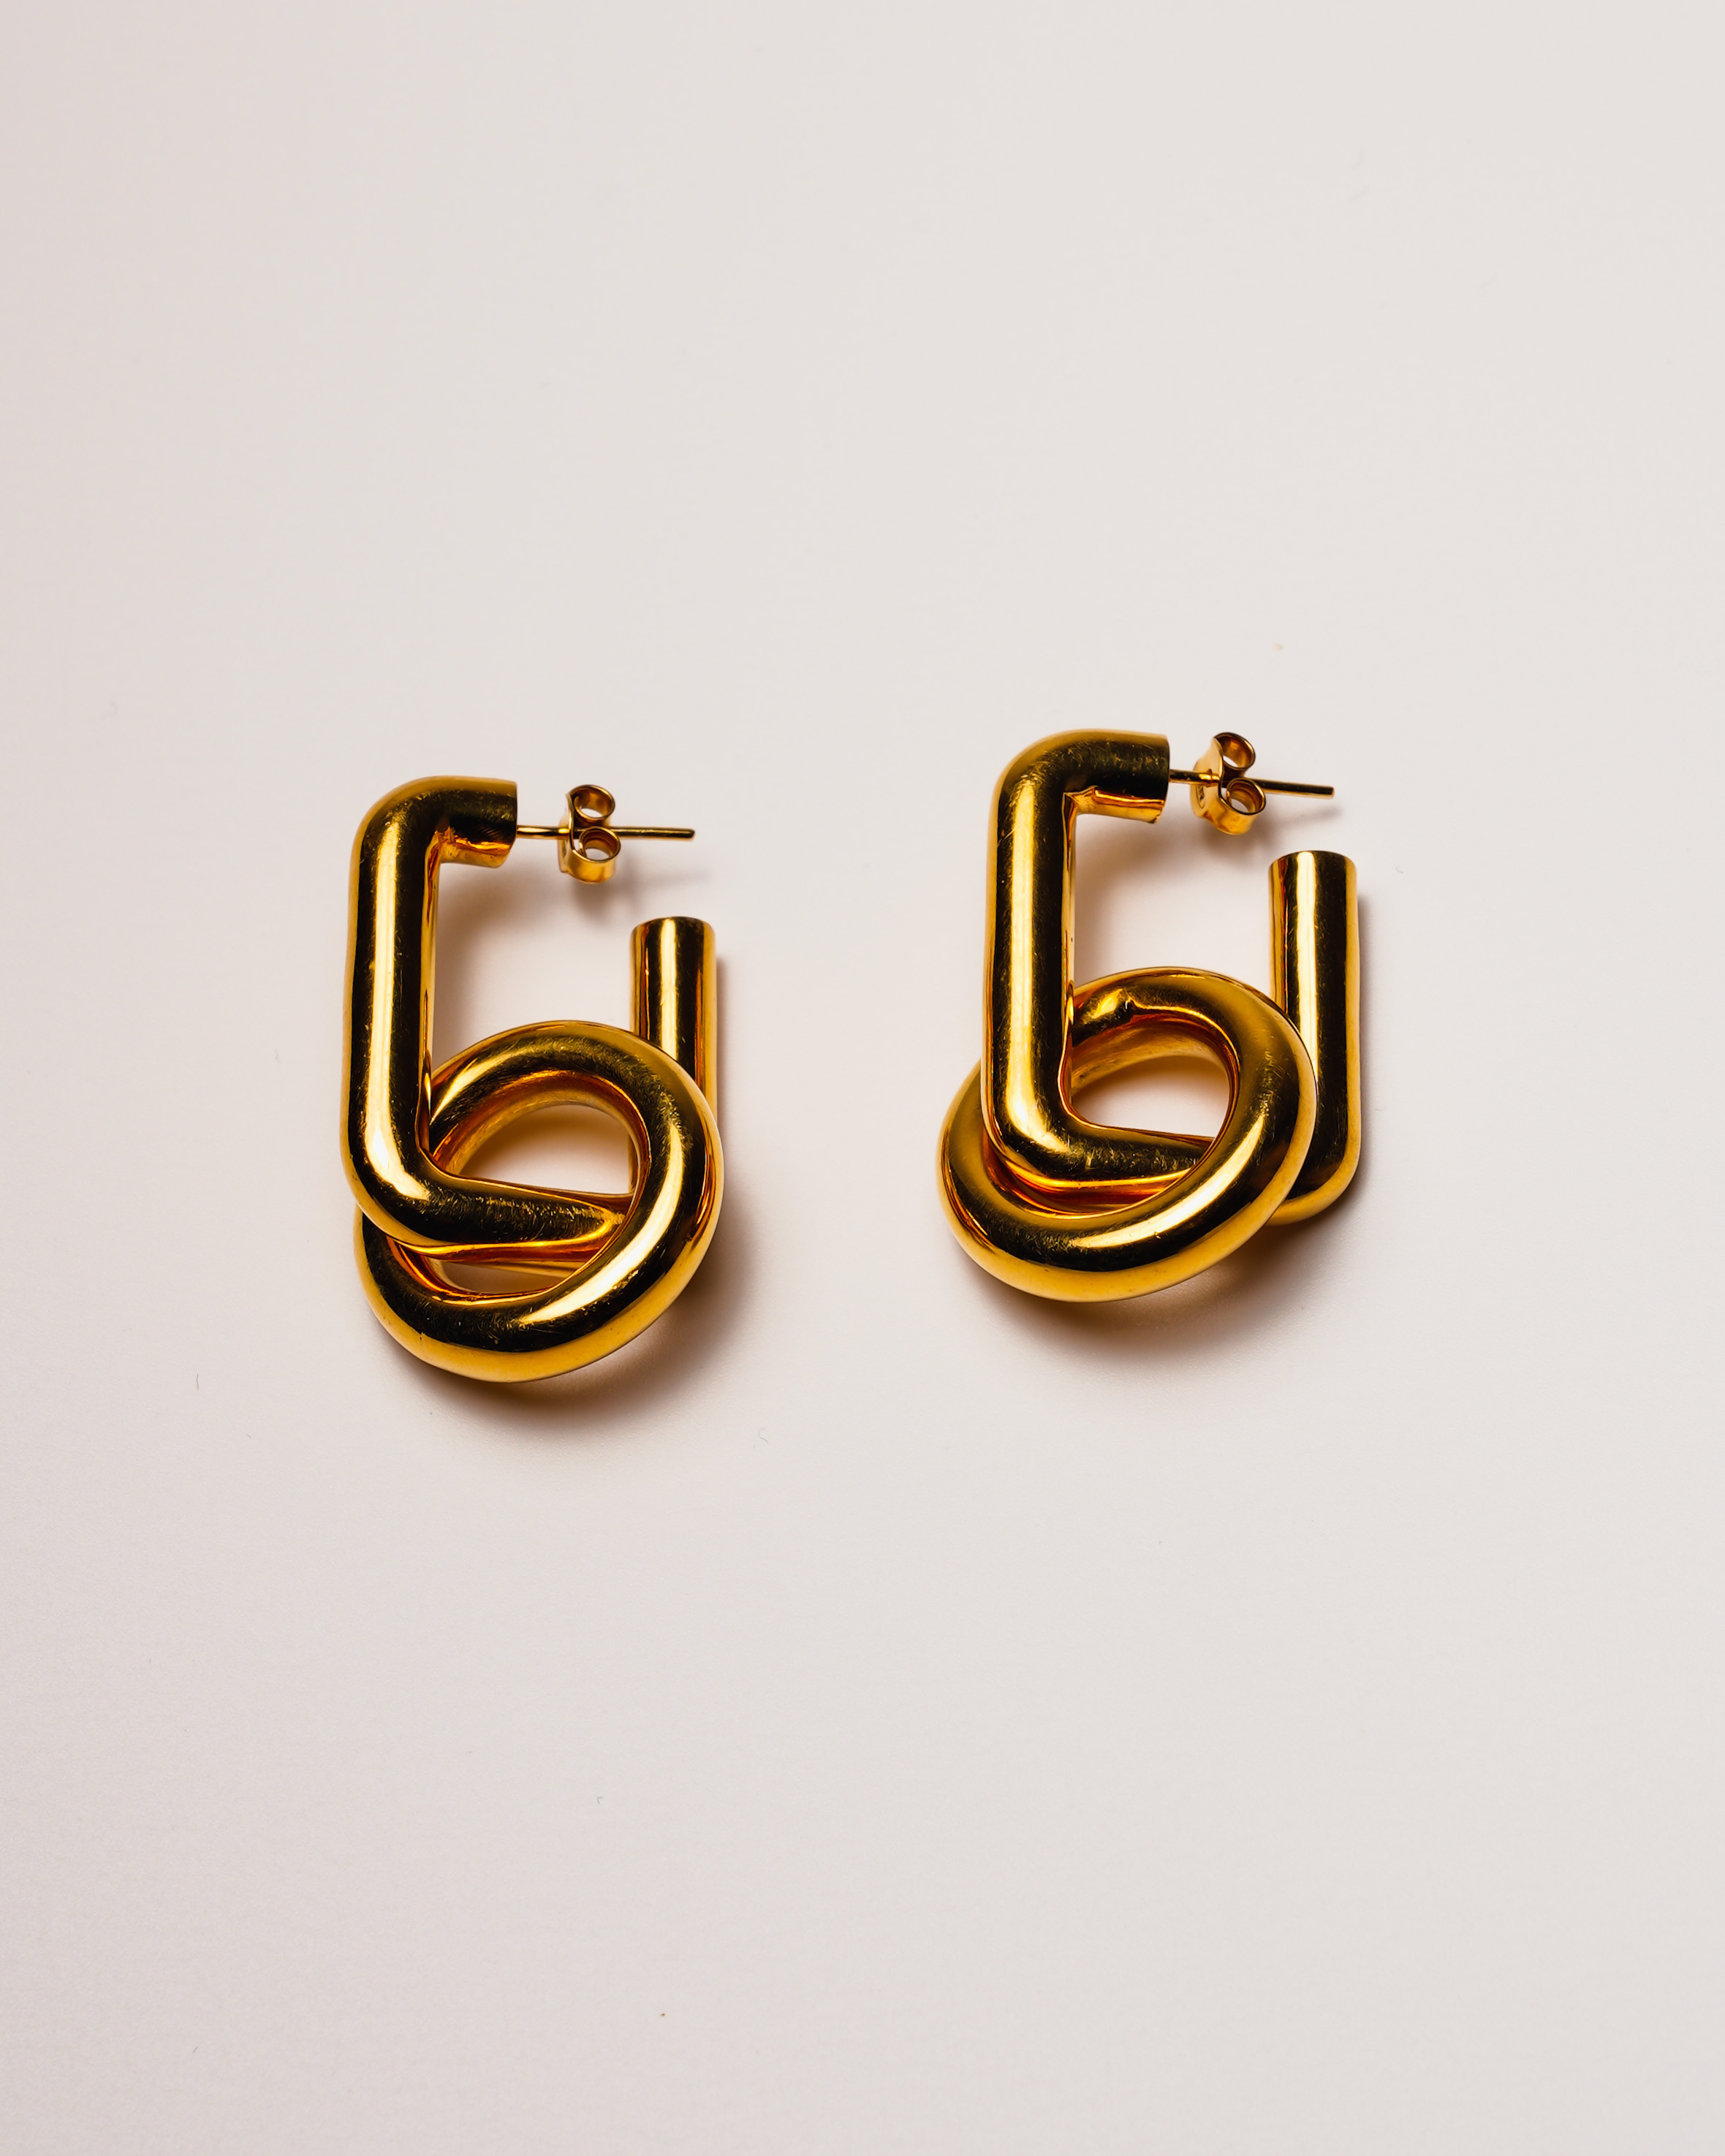 24K yellow gold vermeil earrings in 925 silver